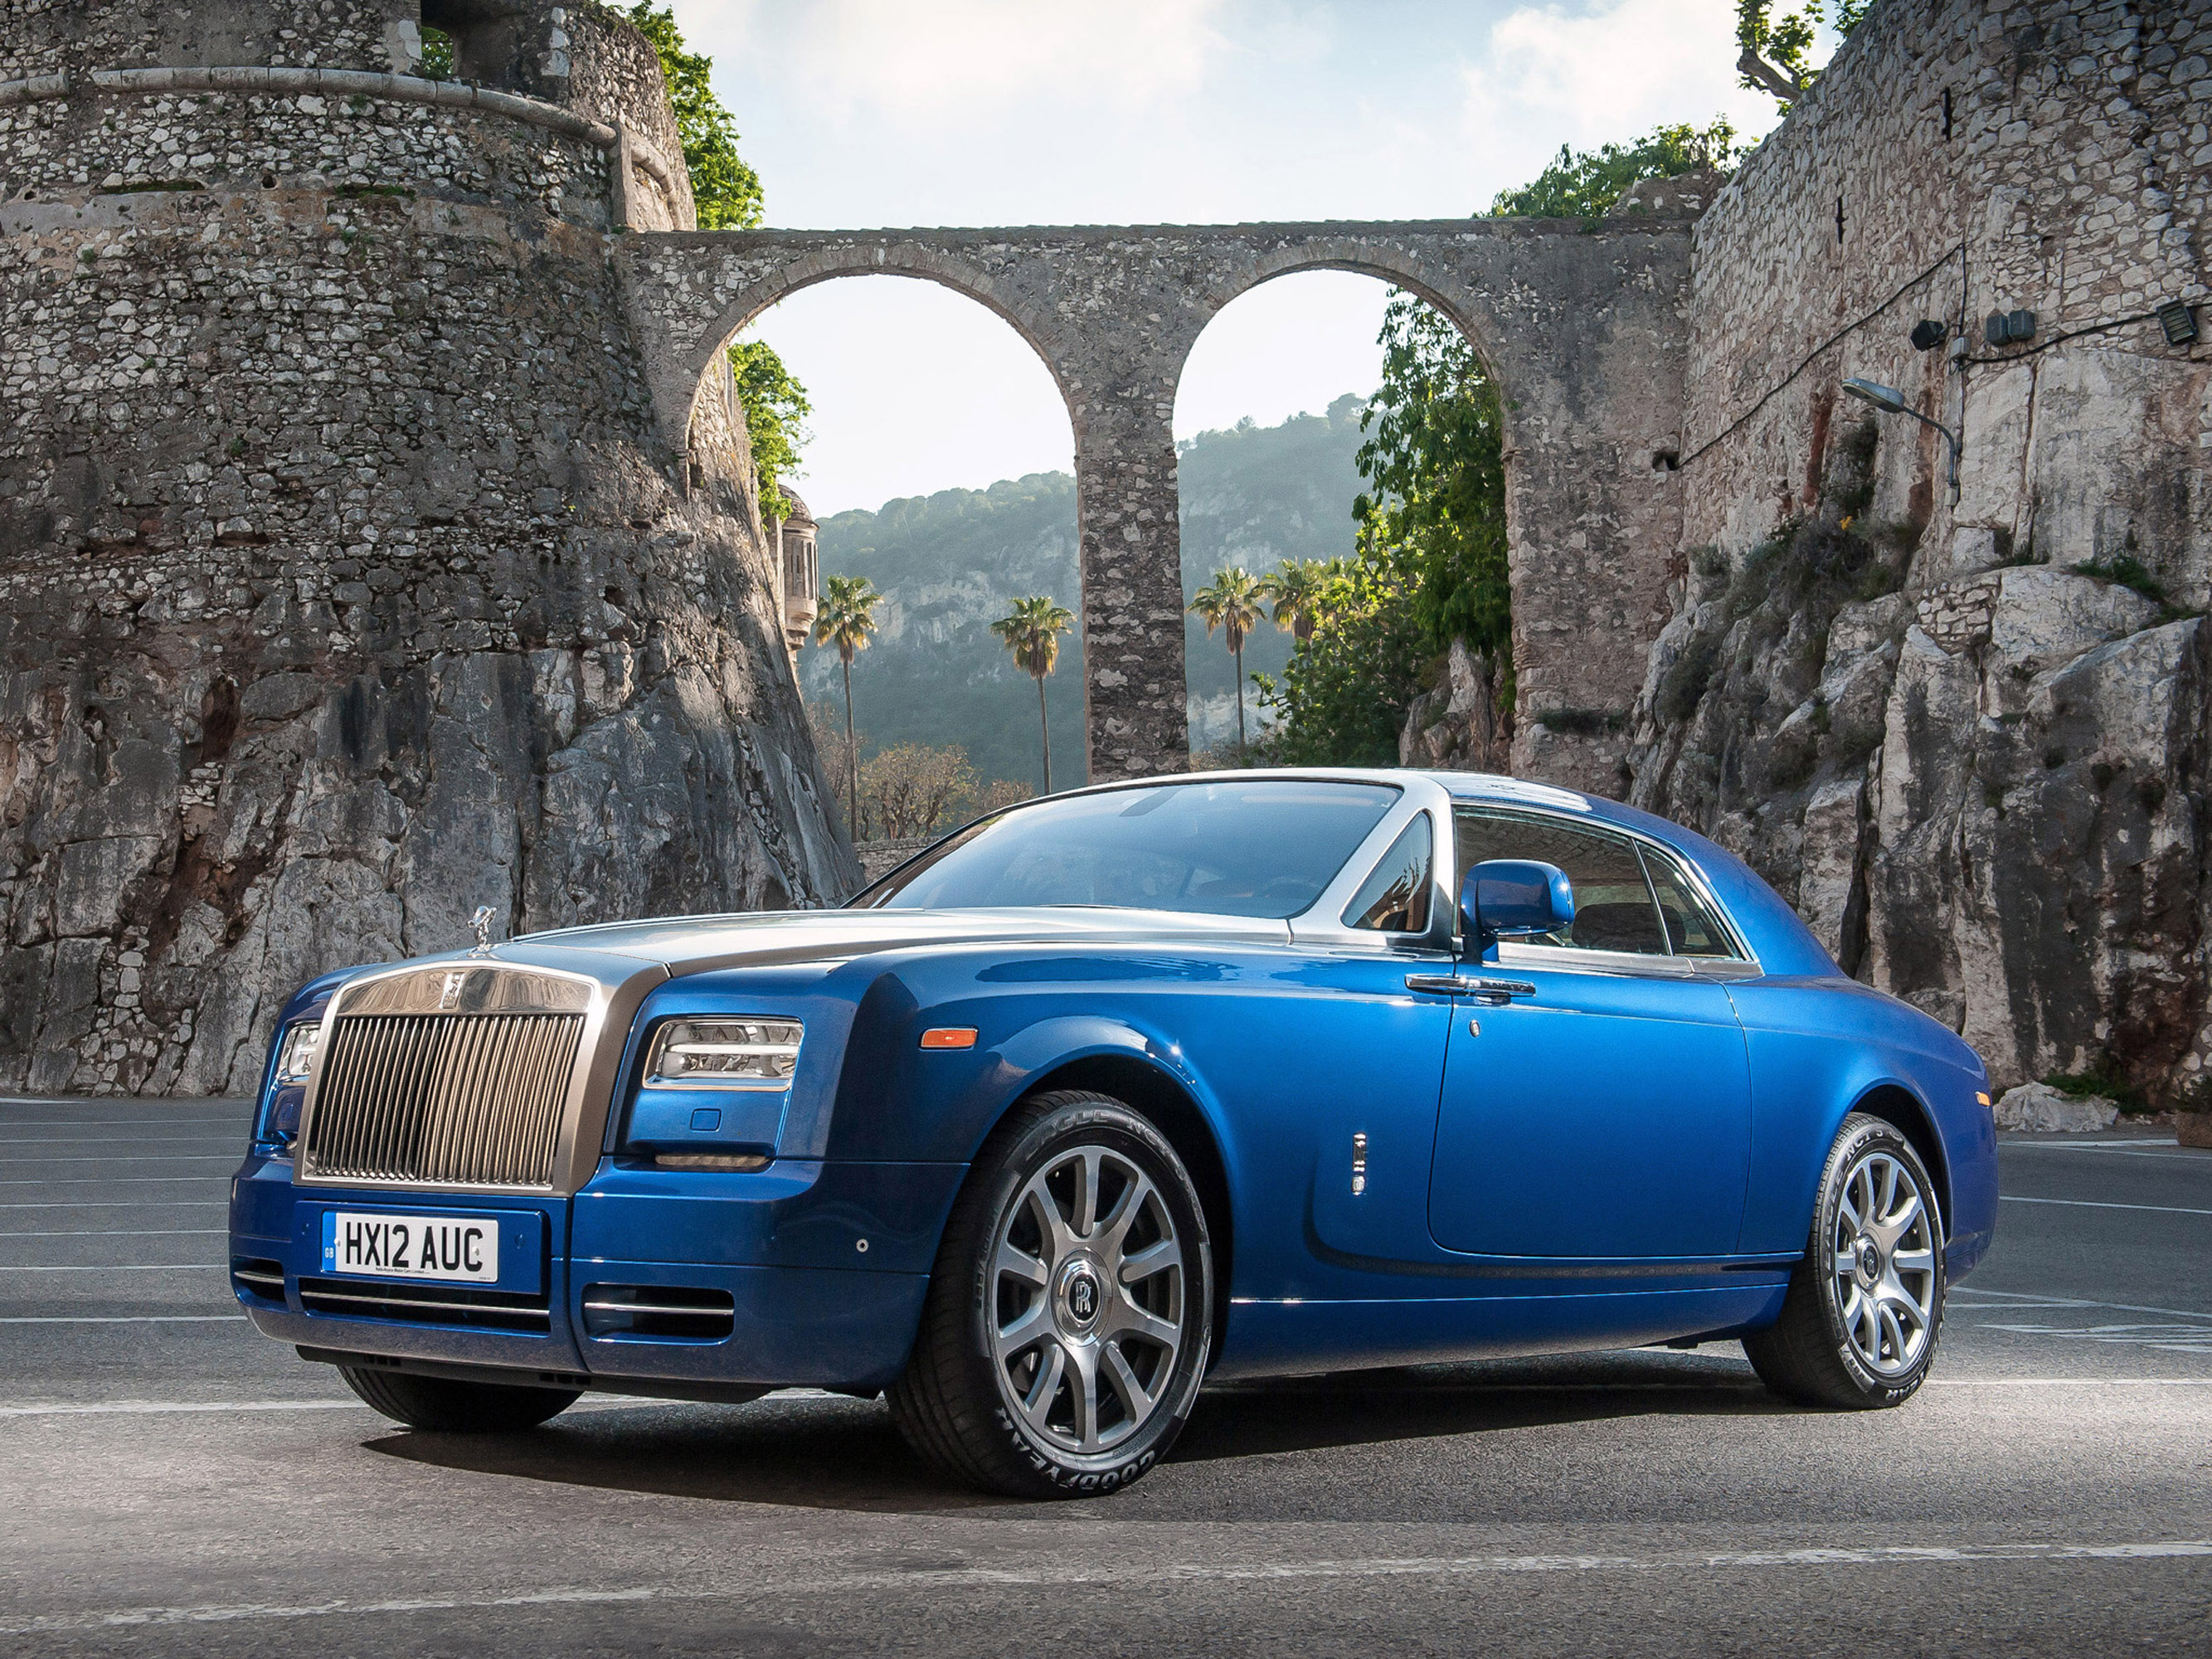 Роллс купе. Машина Rolls Royce Phantom. Роллс Ройс купе. Rolls Royce Phantom Coupe 2012. Rolls Royce Phantom купе.